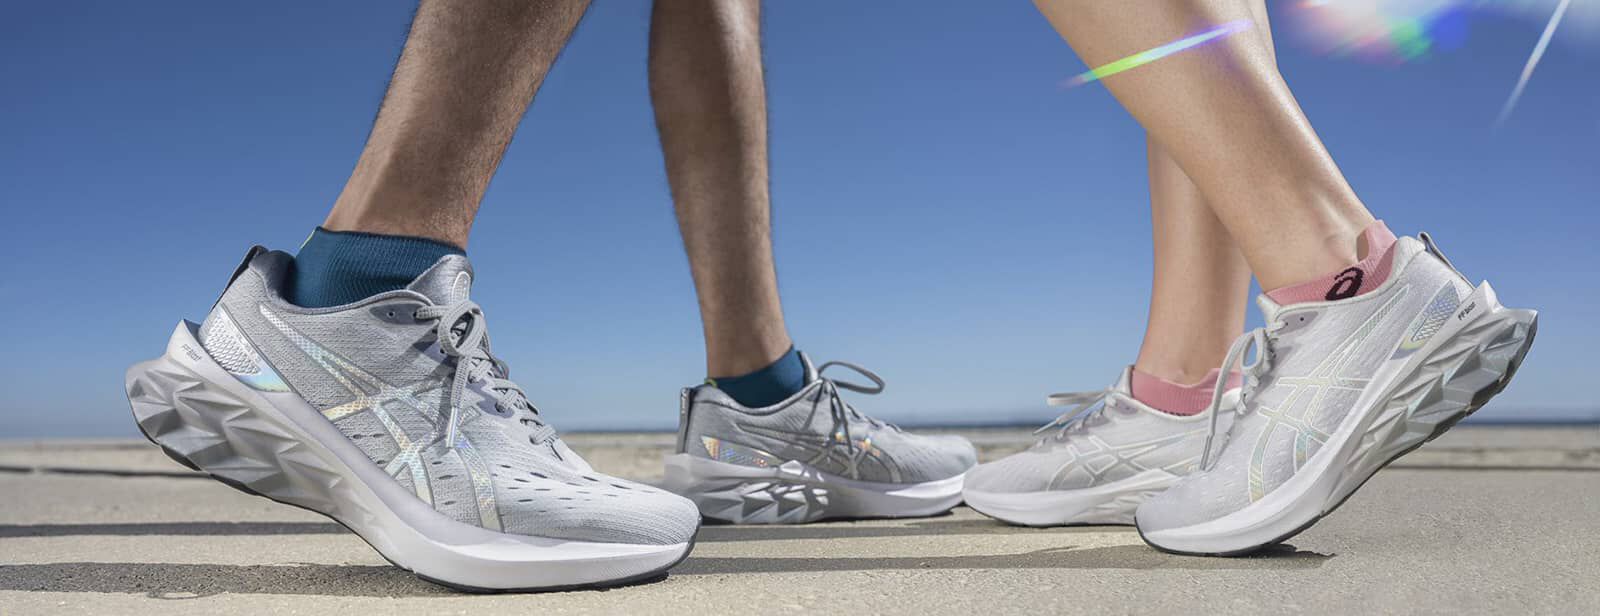 Comment nettoyer ses chaussures de running ? | ASICS